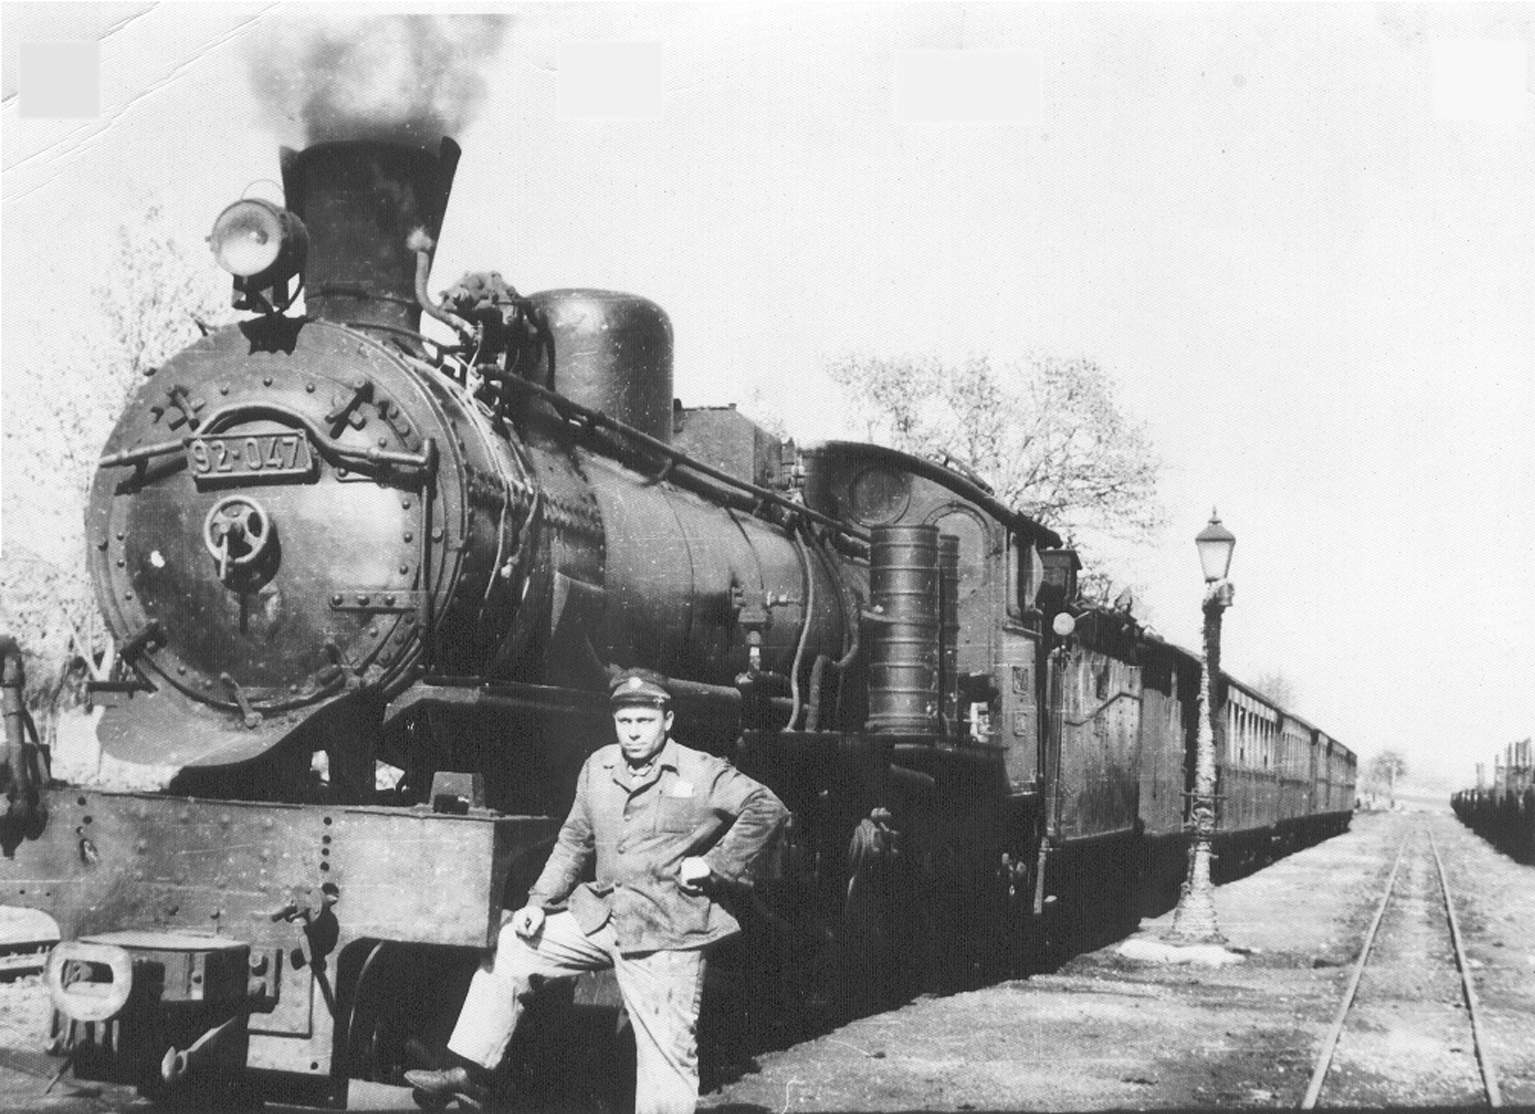 Mašinovodja Jova Pavlović, grljanac, pored lokomotive u stanici Metovnica.jpg